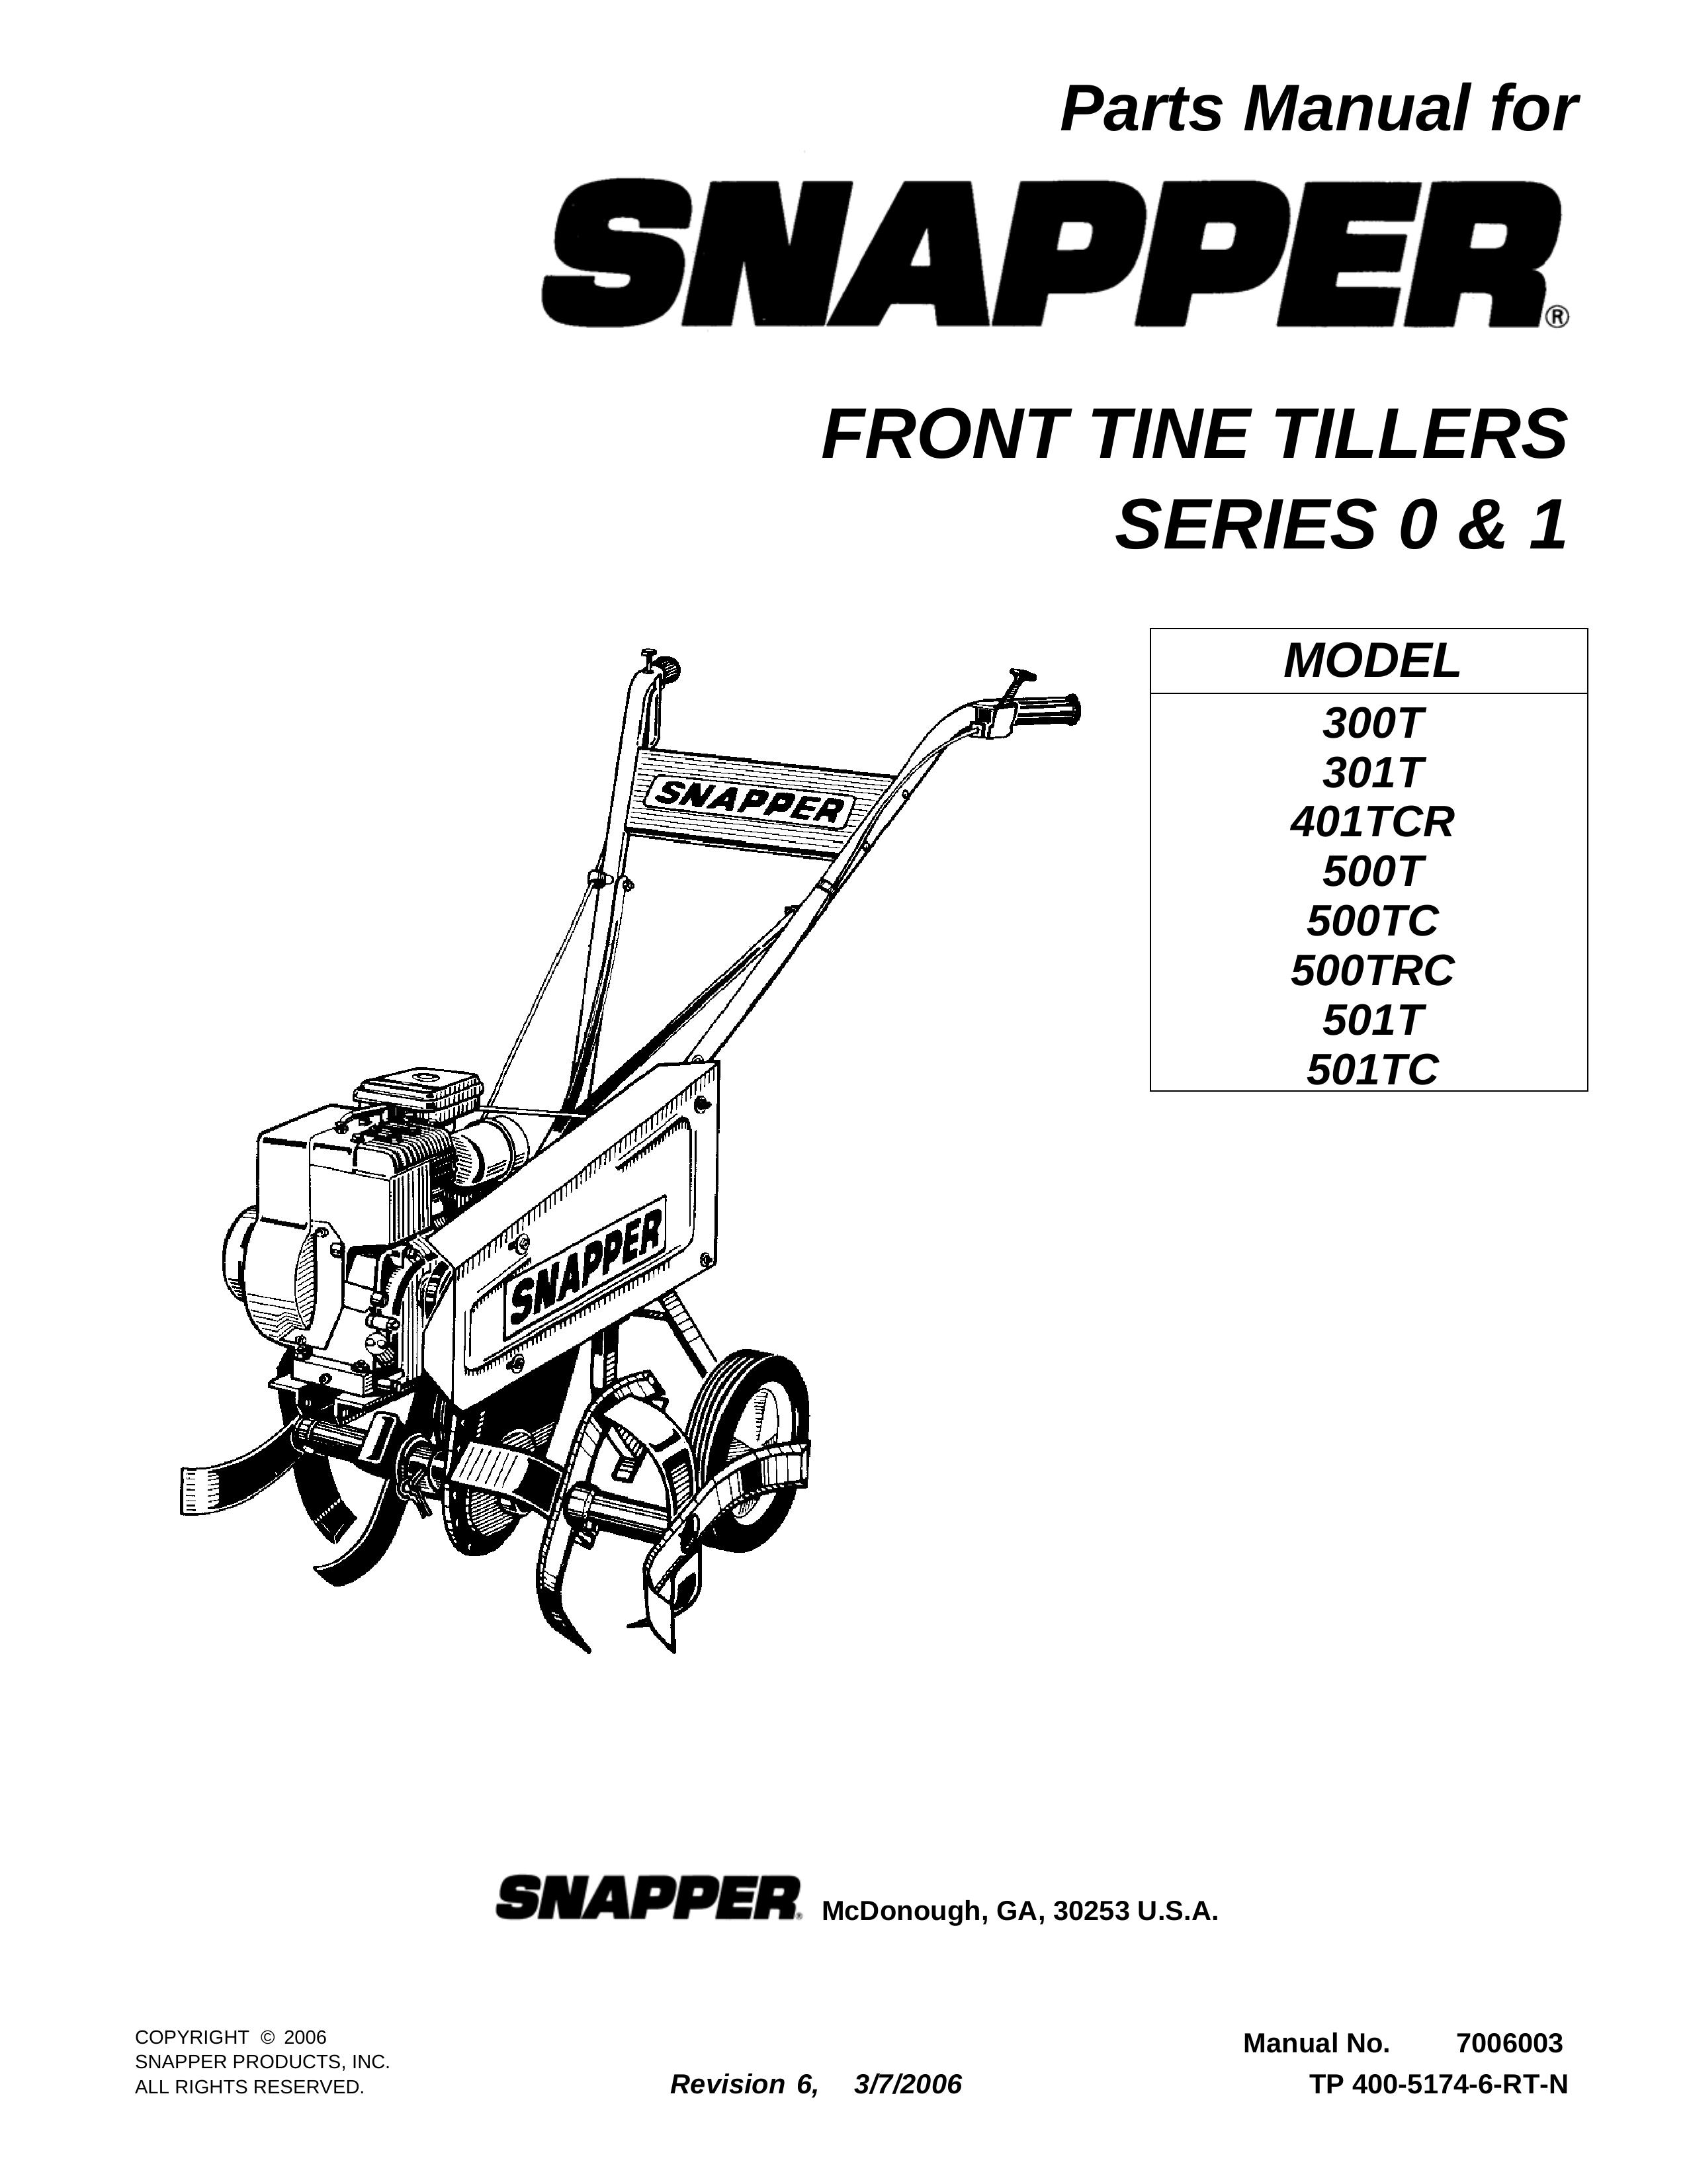 Snapper 401TCR Tiller User Manual